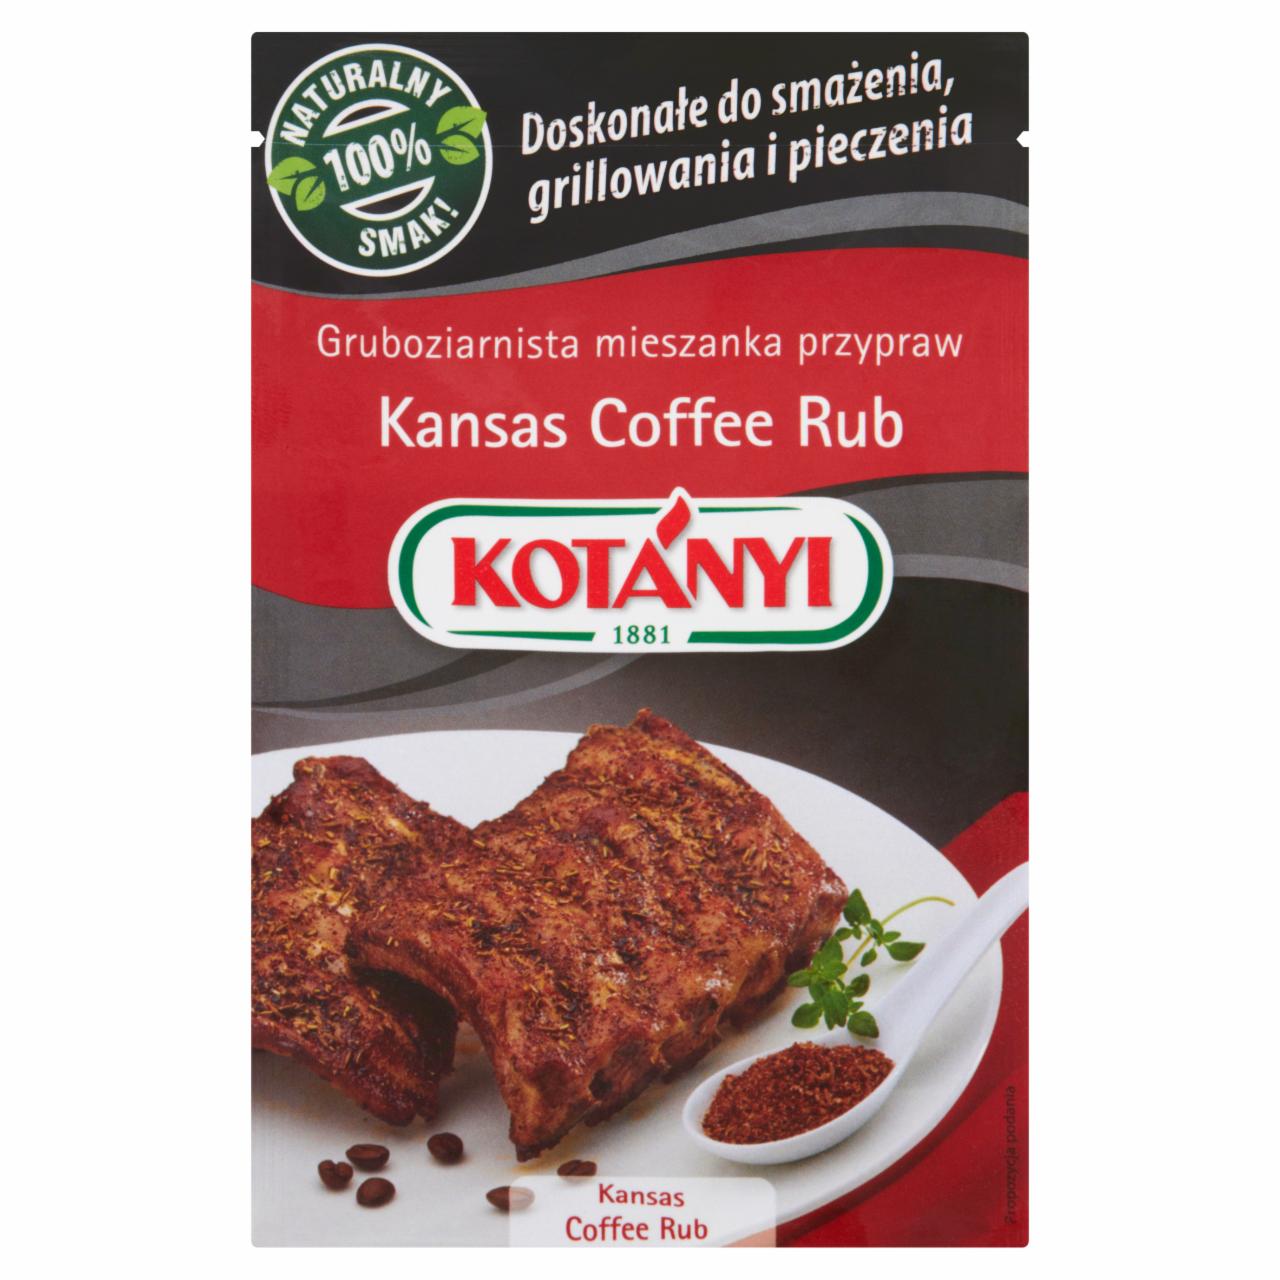 Zdjęcia - Kotányi Kansas Coffee Rub Gruboziarnista mieszanka przypraw 22 g